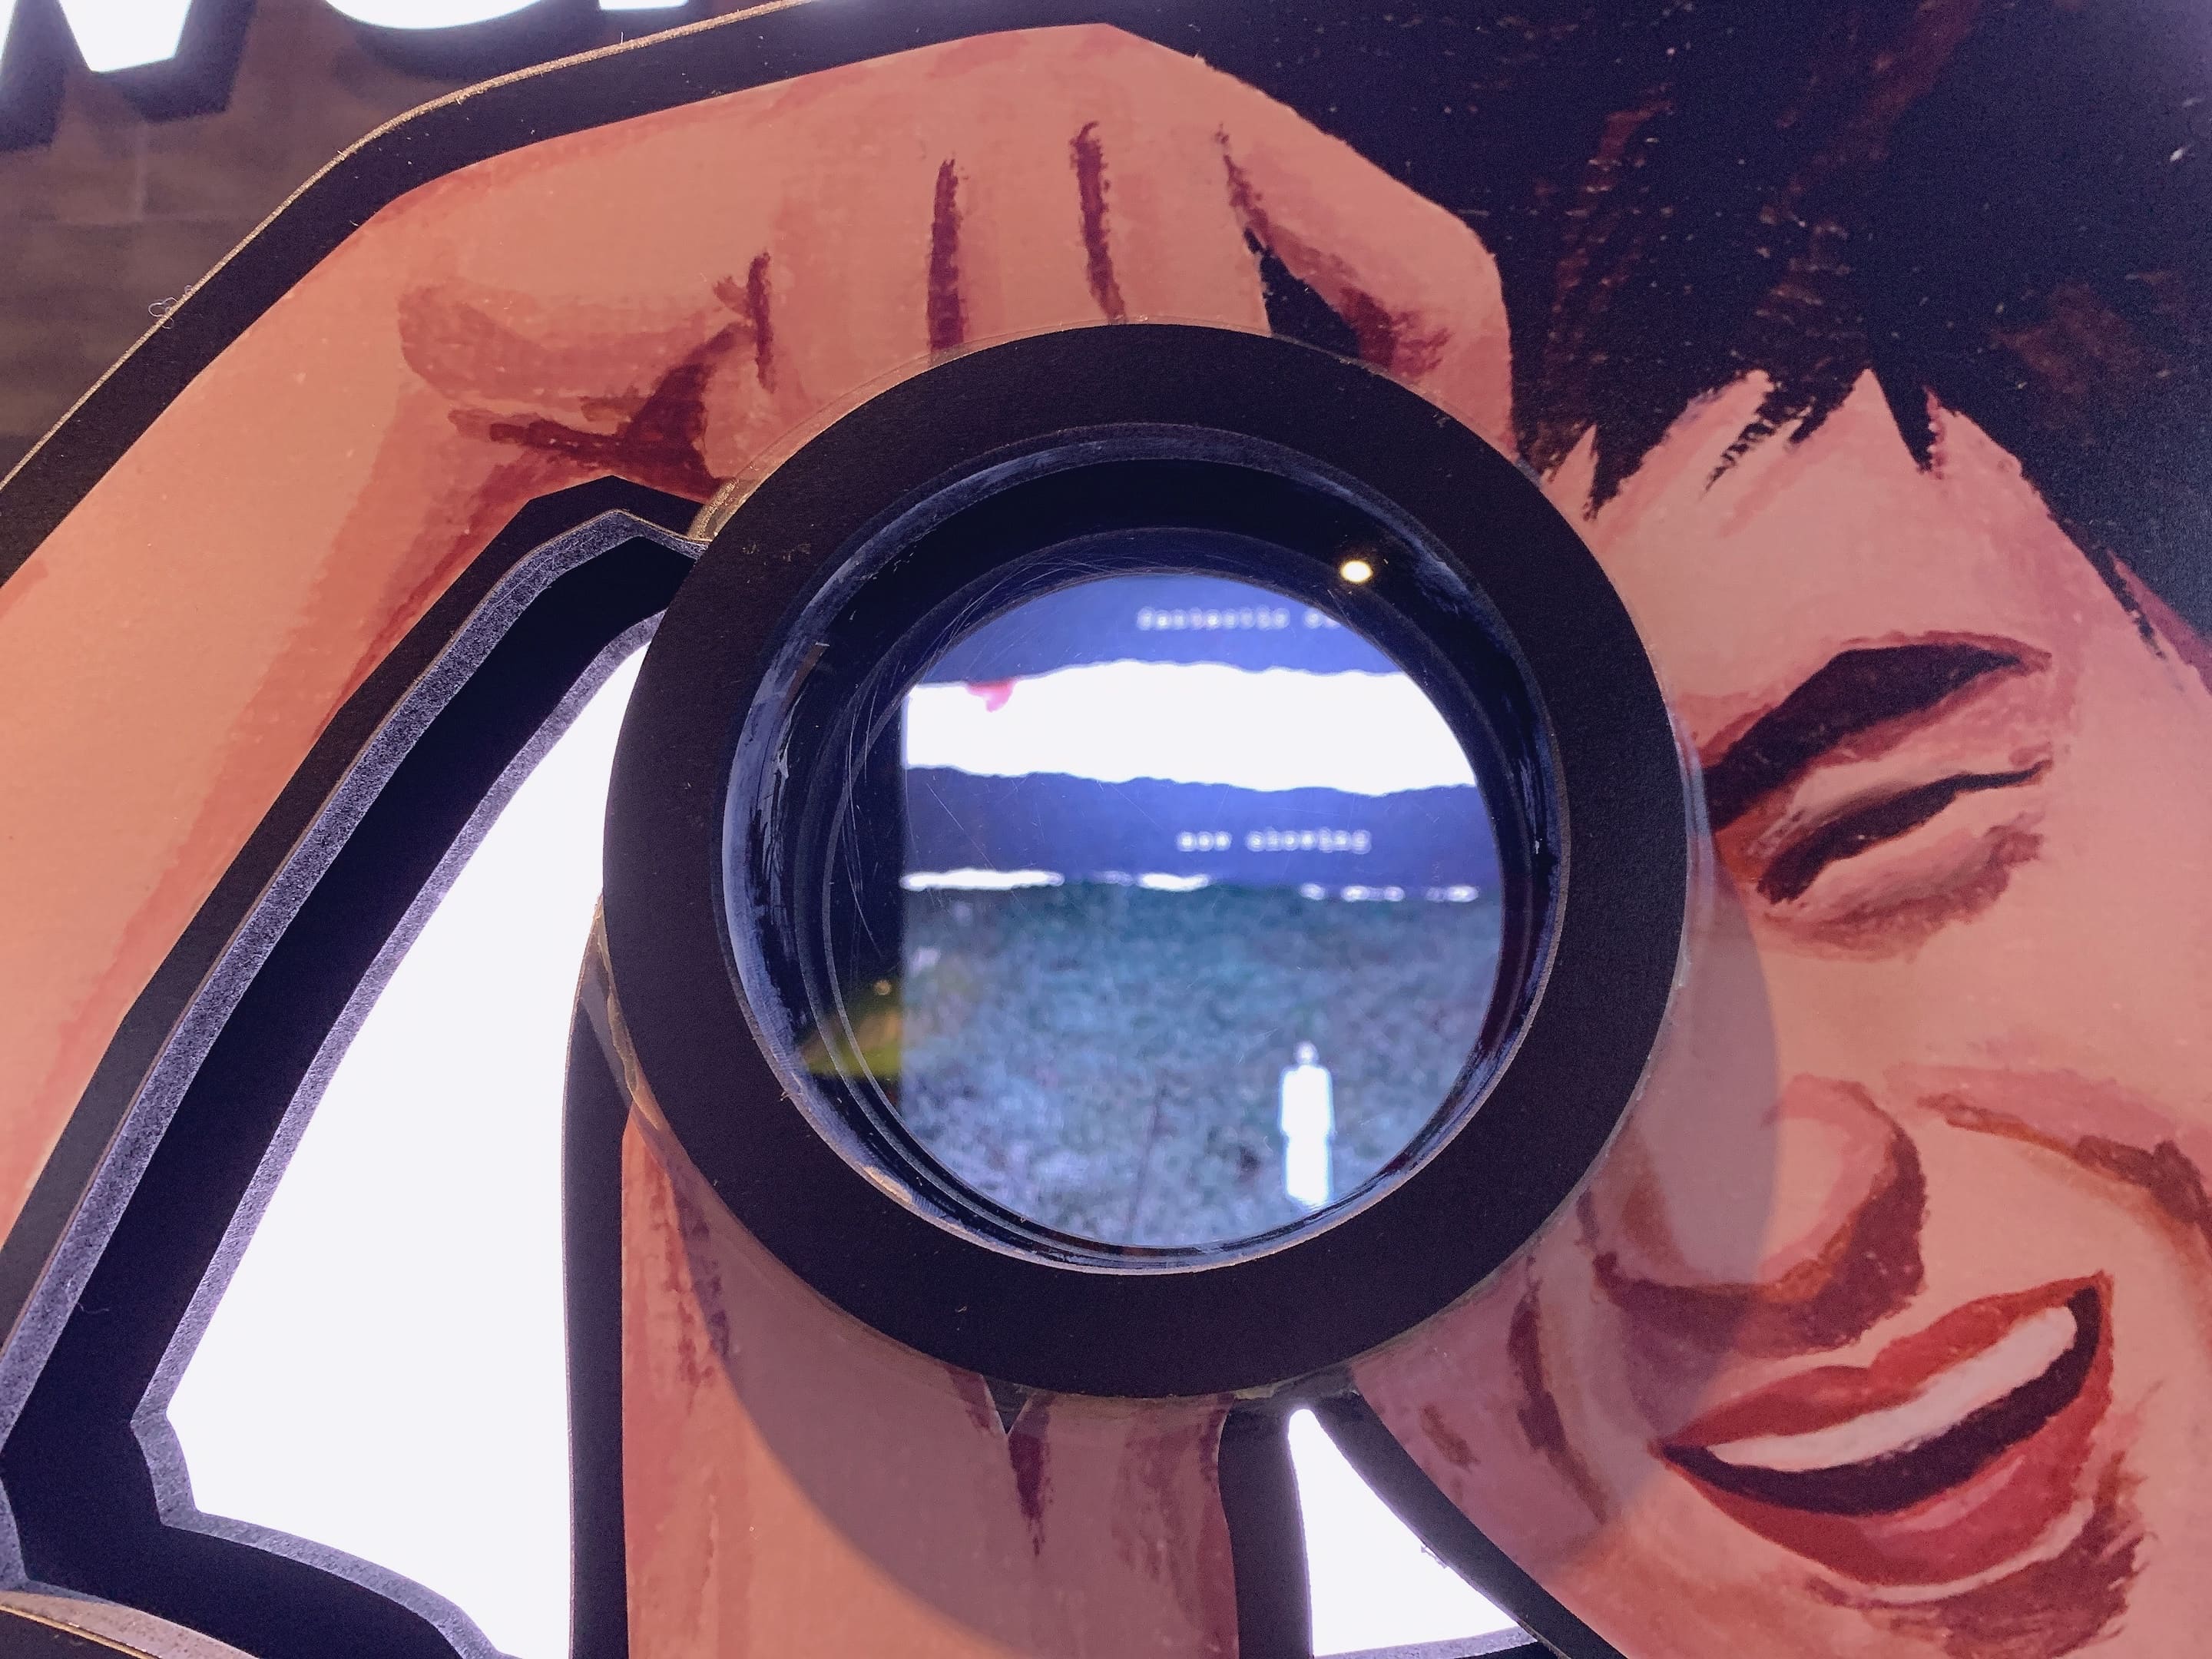 부산영화체험박물관 포스터 및 영화소개 카메라 렌즈를 통해서 보기